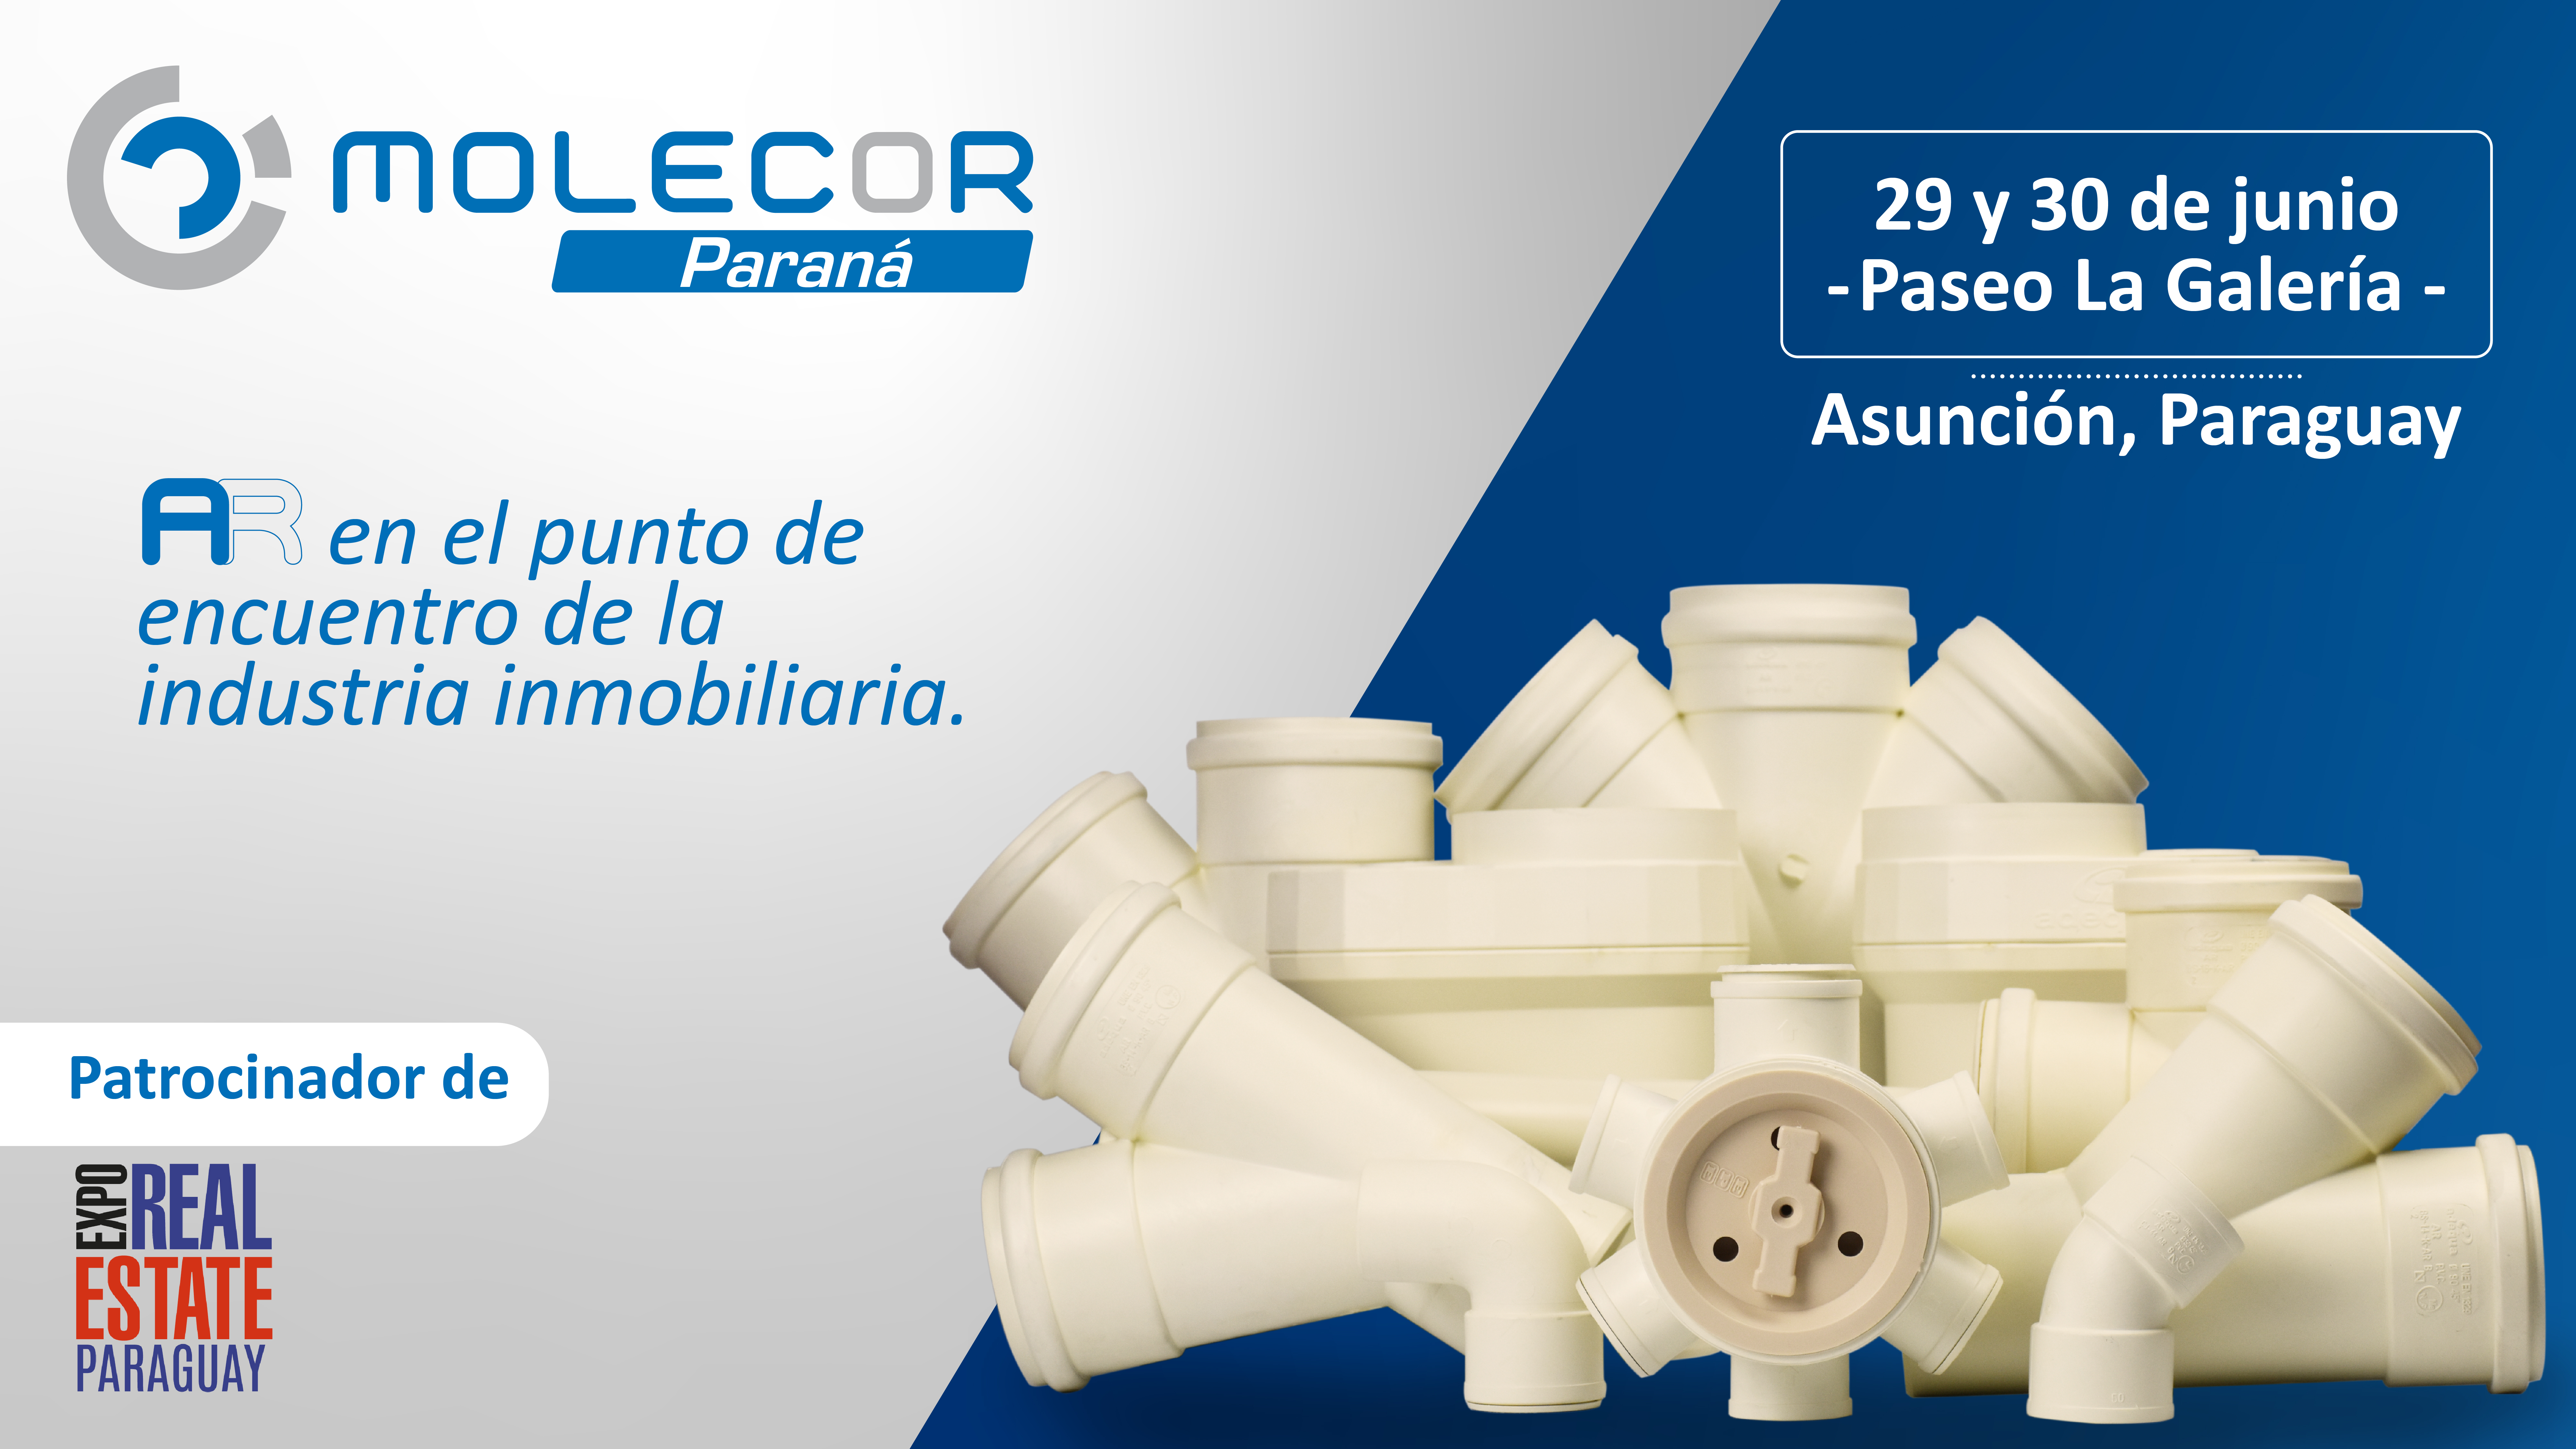 Molecor participará en Expo Real Estate Paraguay para presentar los nuevos productos de edificación